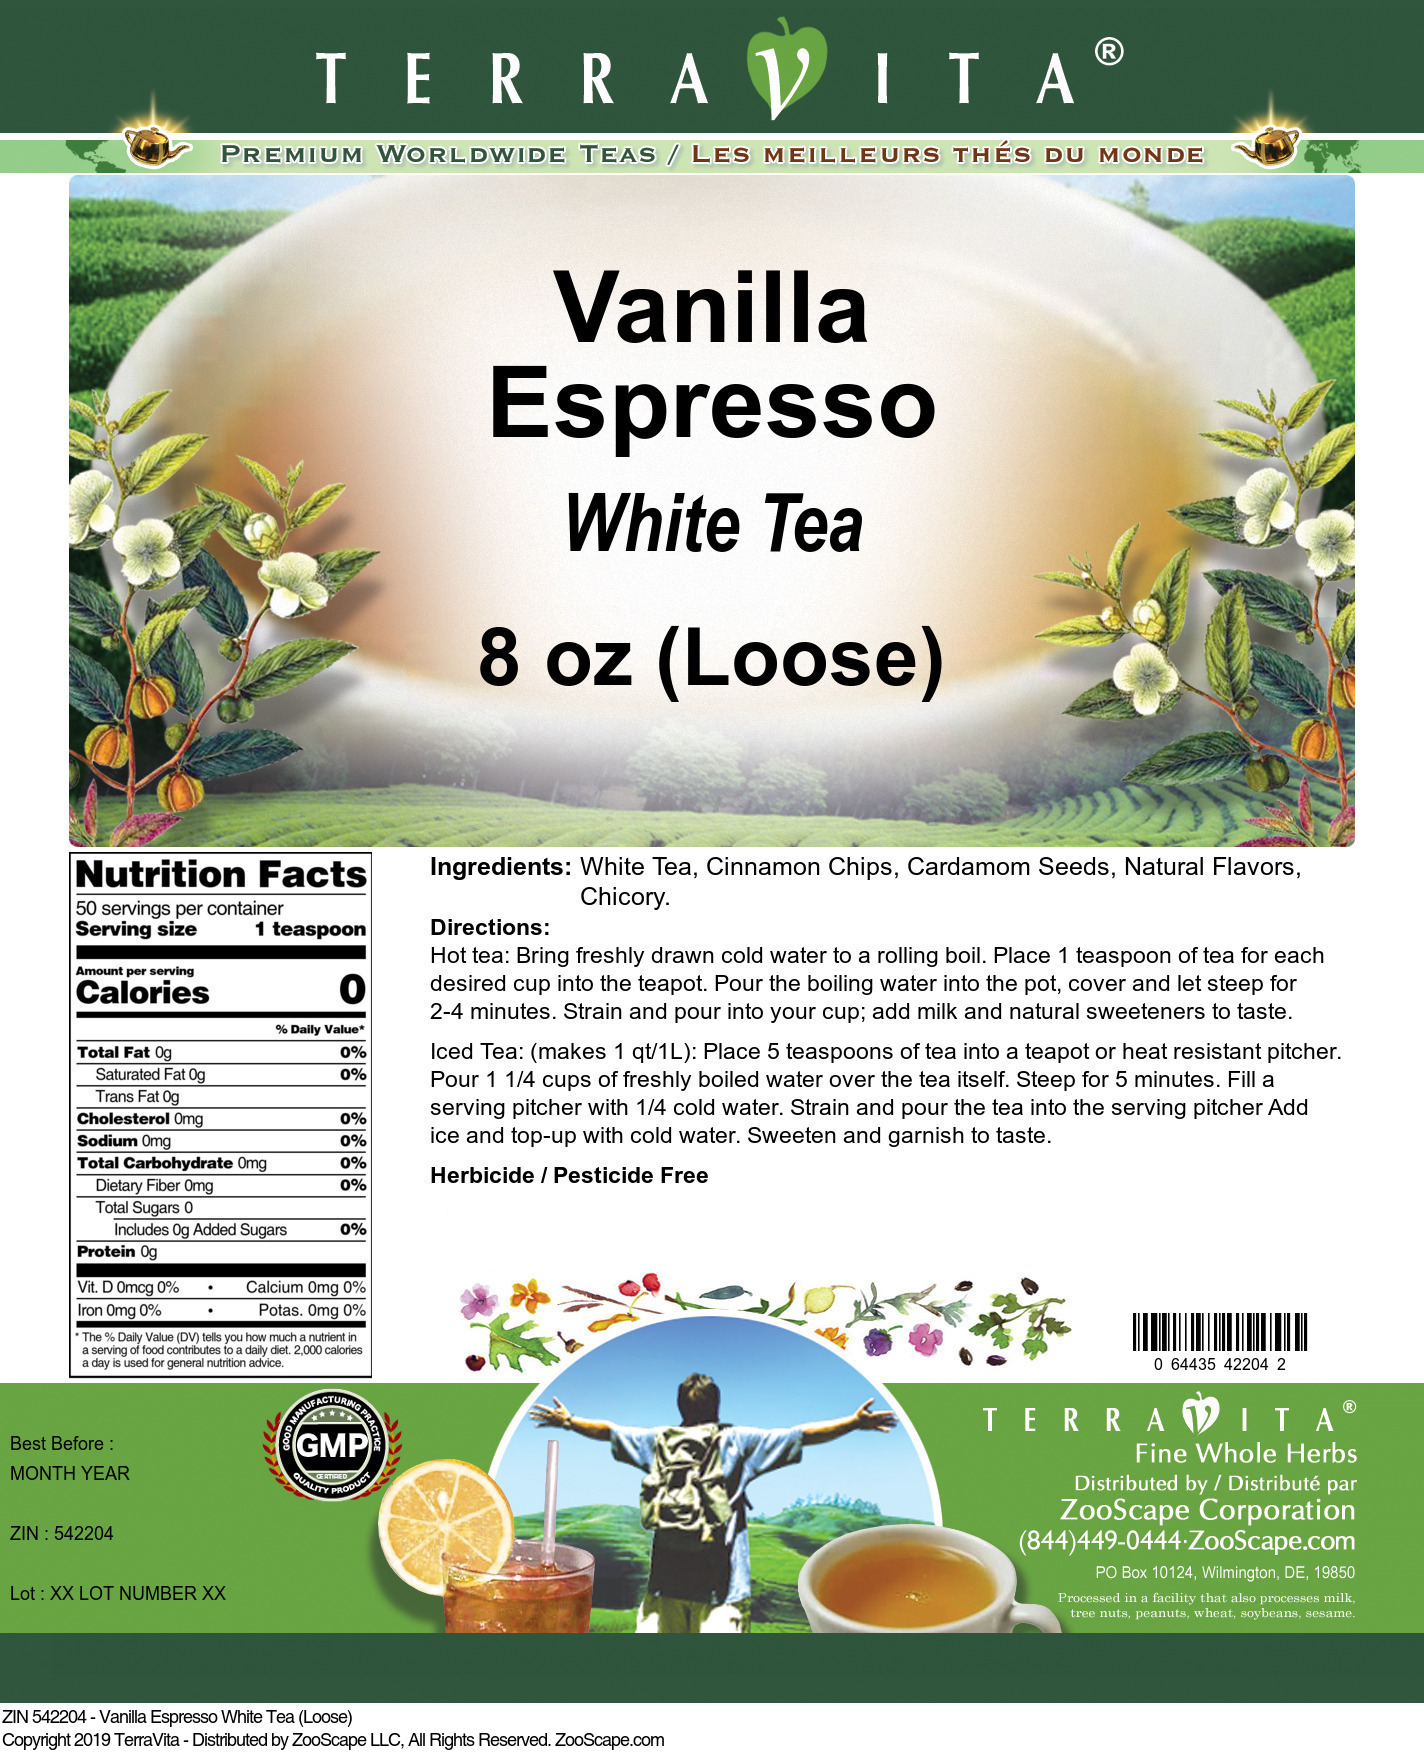 Vanilla Espresso White Tea (Loose) - Label